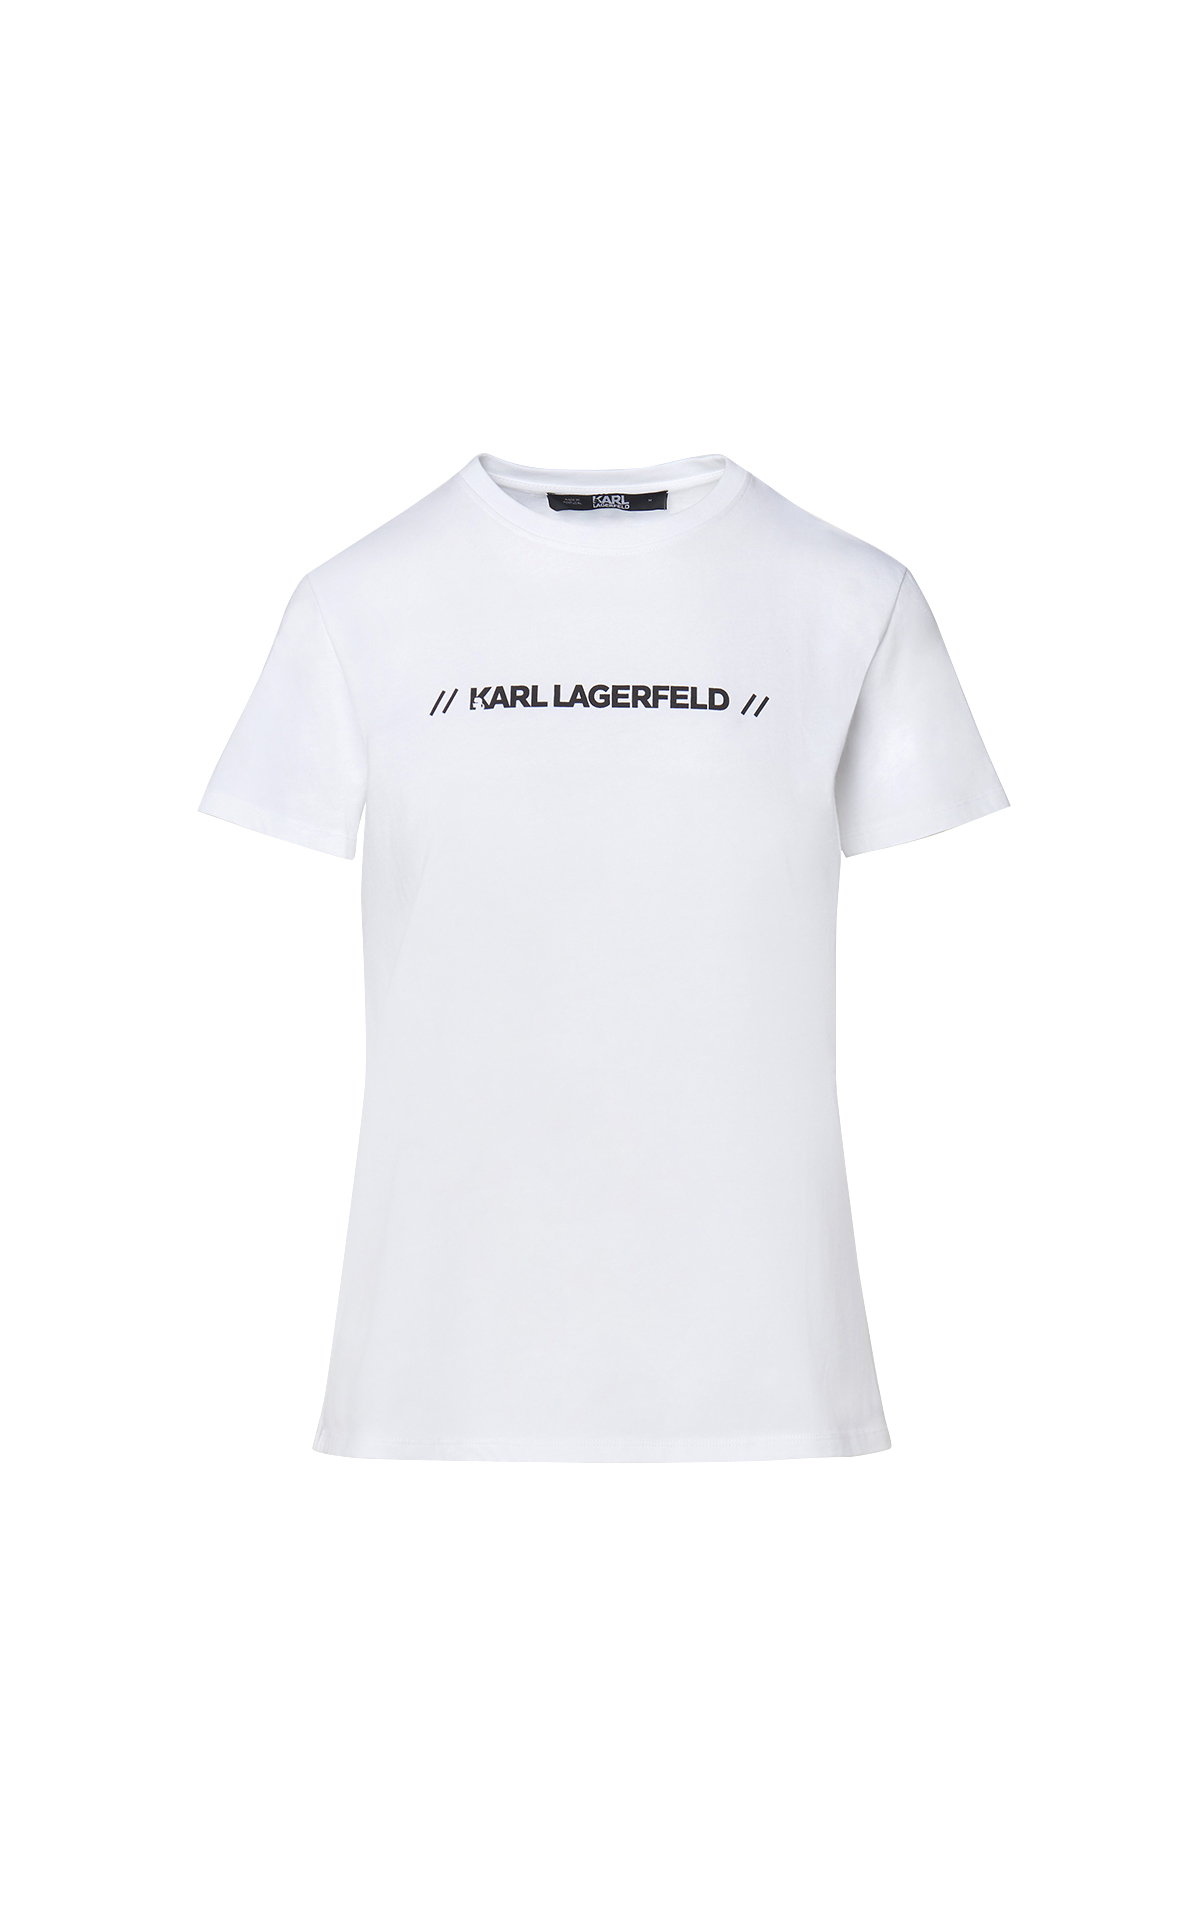 La Vallée Village Karl Lagerfeld white t-shirt